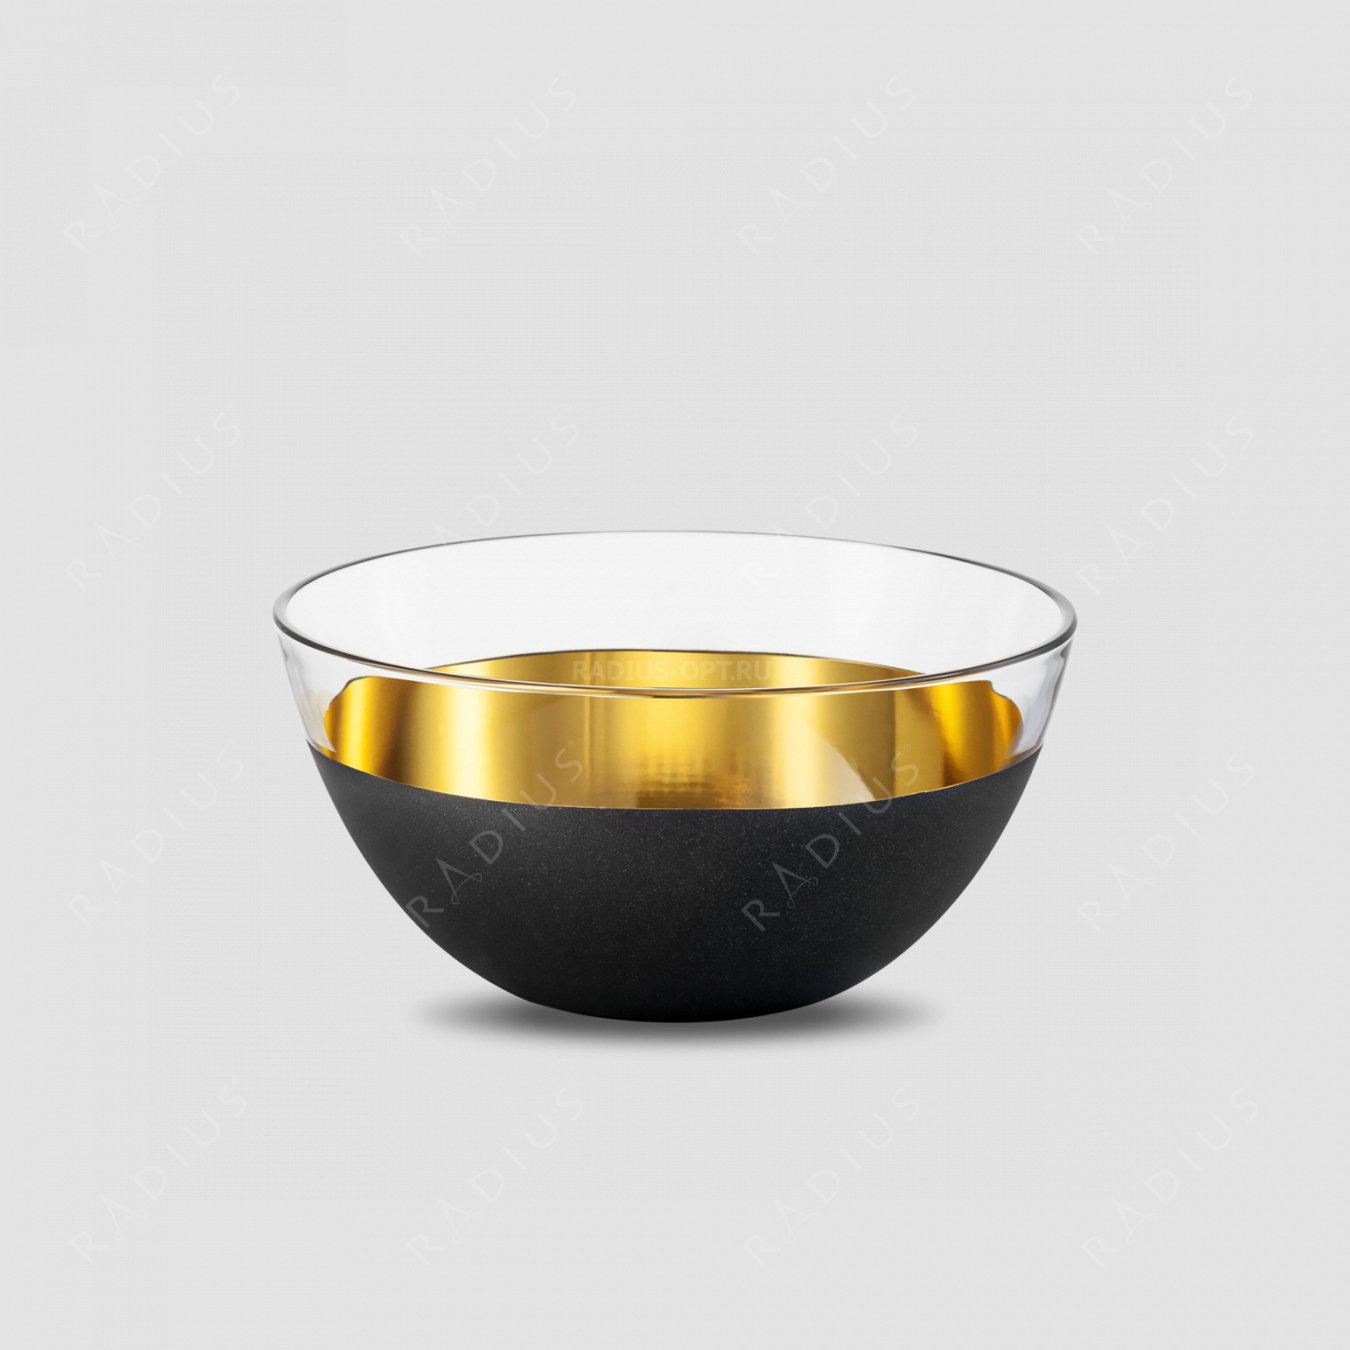 Чаша Gold, диаметр: 24 см, материал: бессвинцовый хрусталь, цвет: черный/золото, серия Cosmo, EISCH, Германия